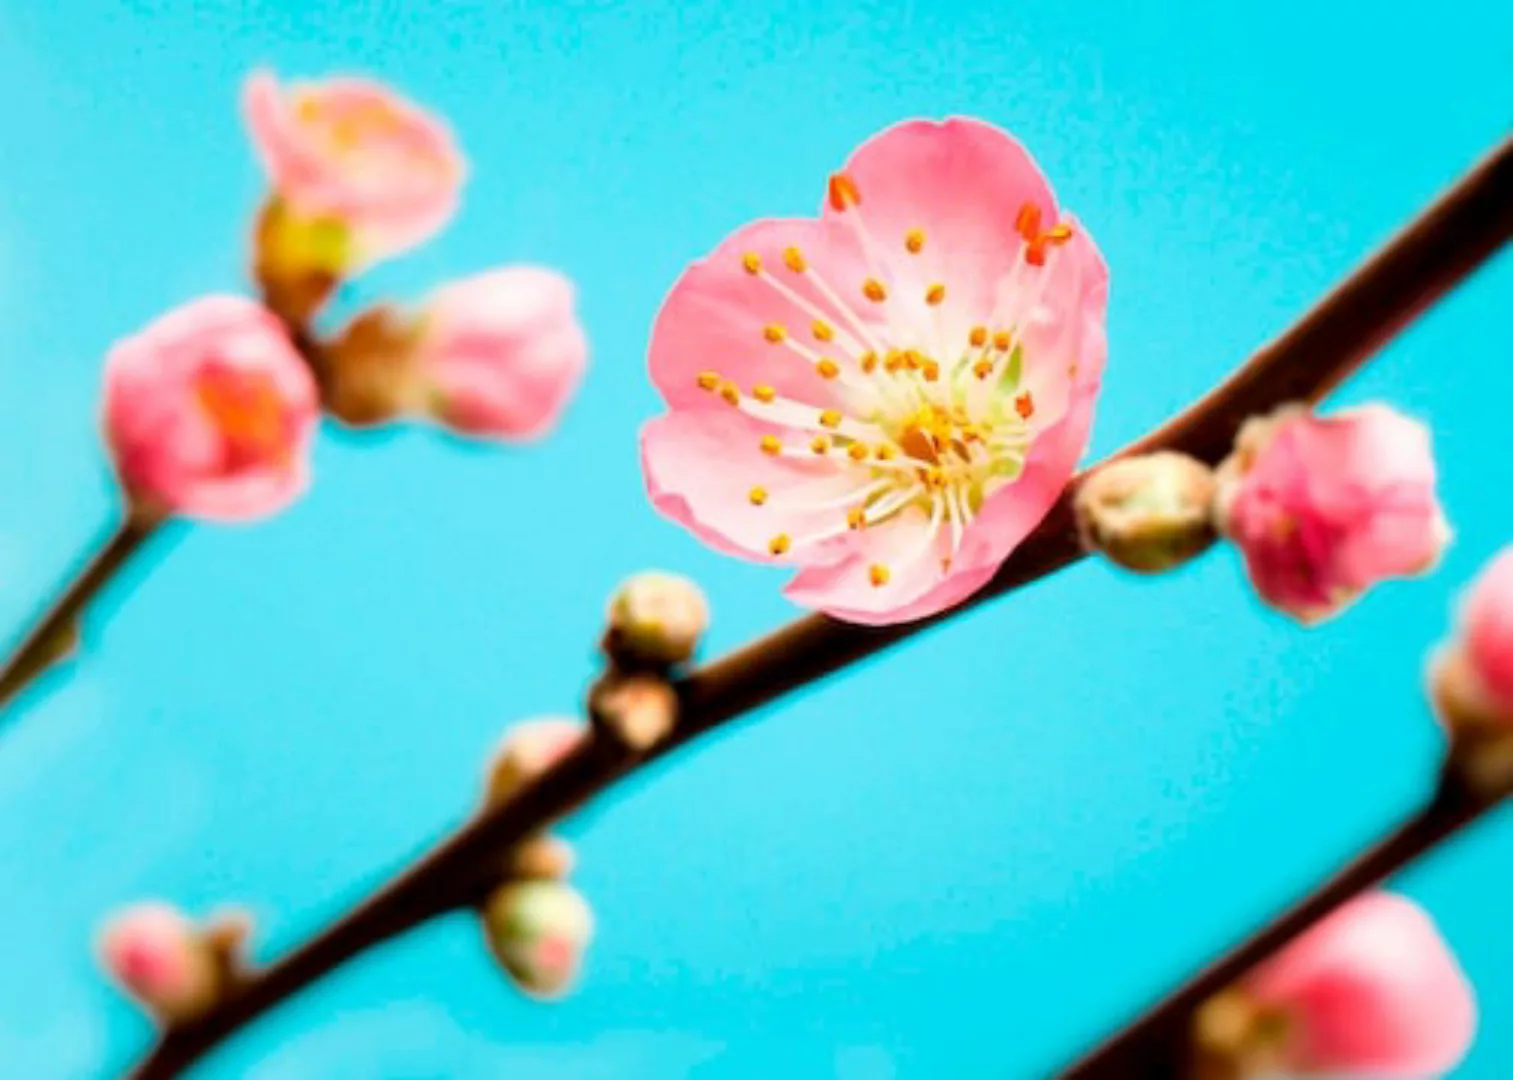 KOMAR Vlies Fototapete - Peach Blossom - Größe 350 x 250 cm mehrfarbig günstig online kaufen